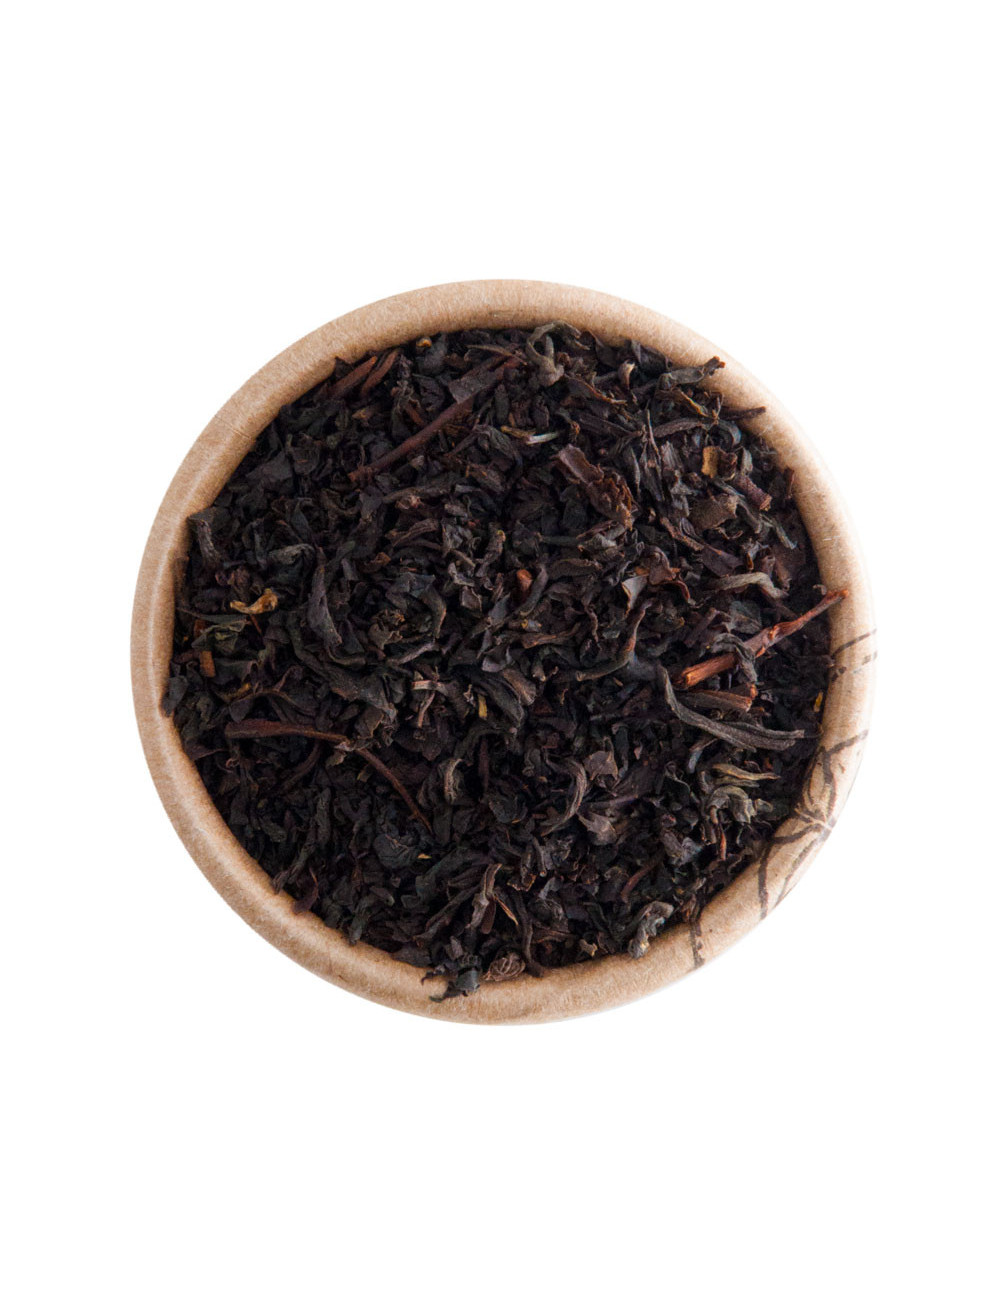 Earl Grey BIO tè nero aromatizzato - La Pianta del Tè shop online